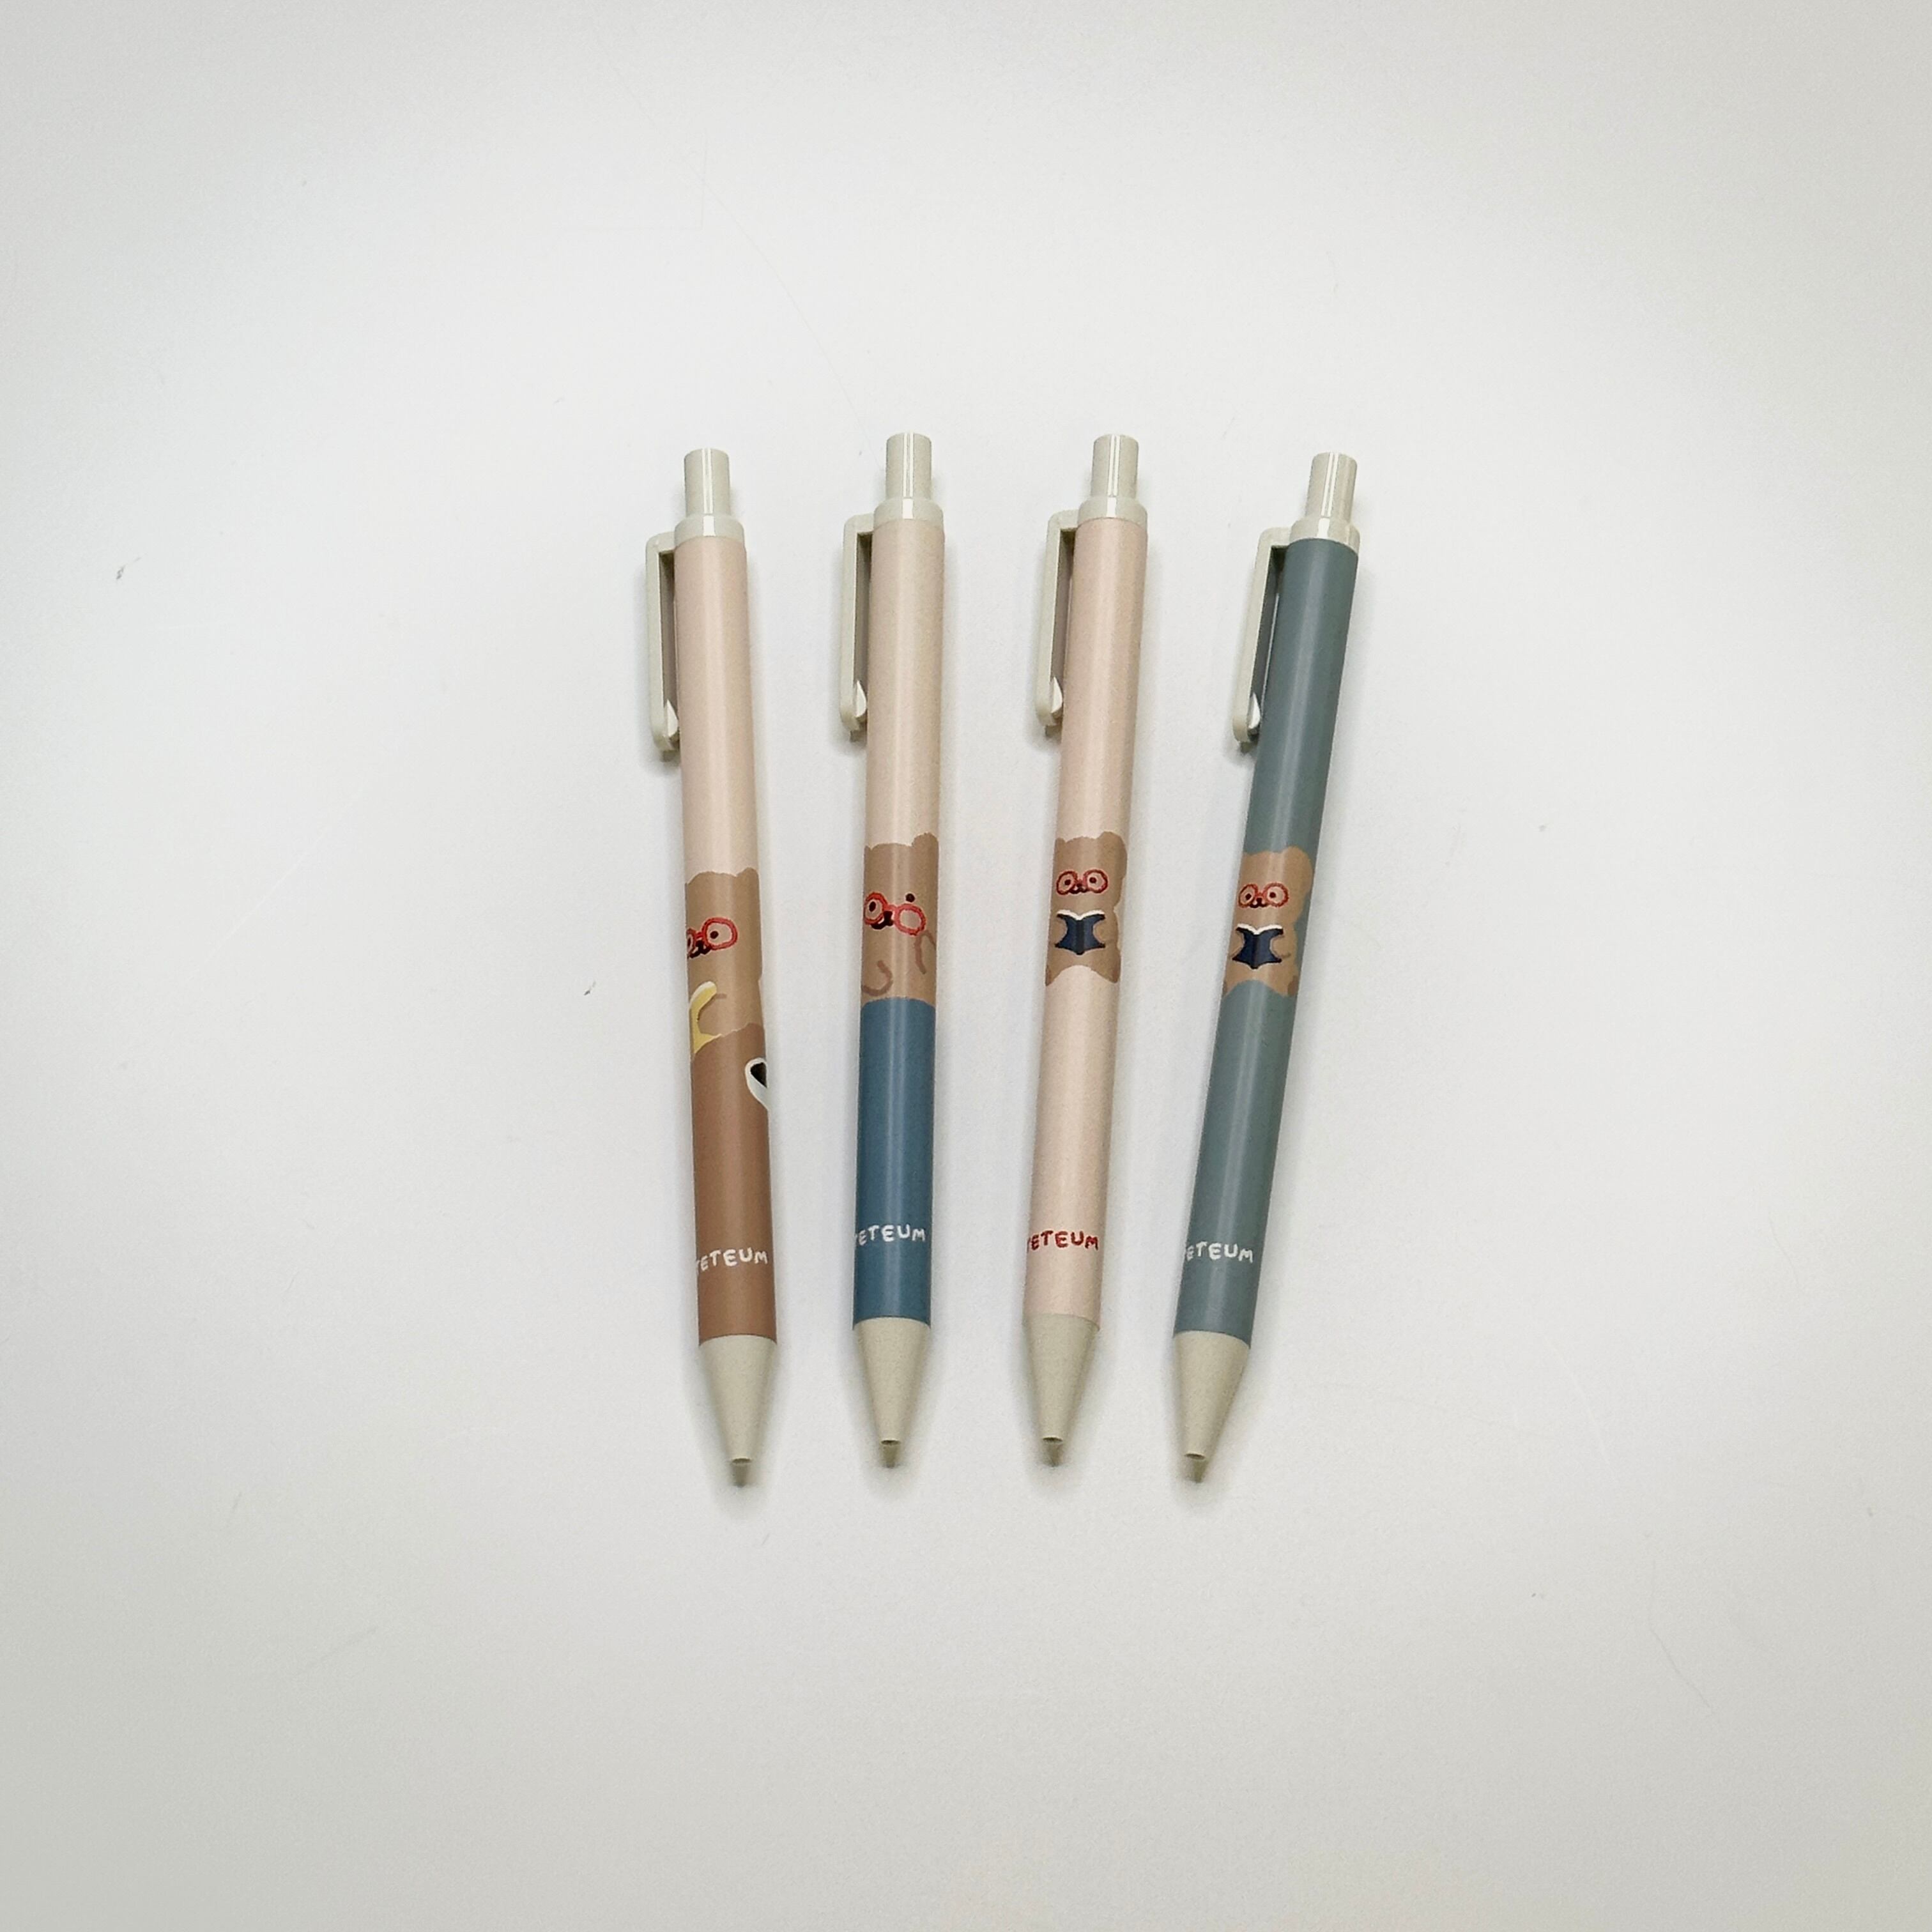 ボールペン画像4種